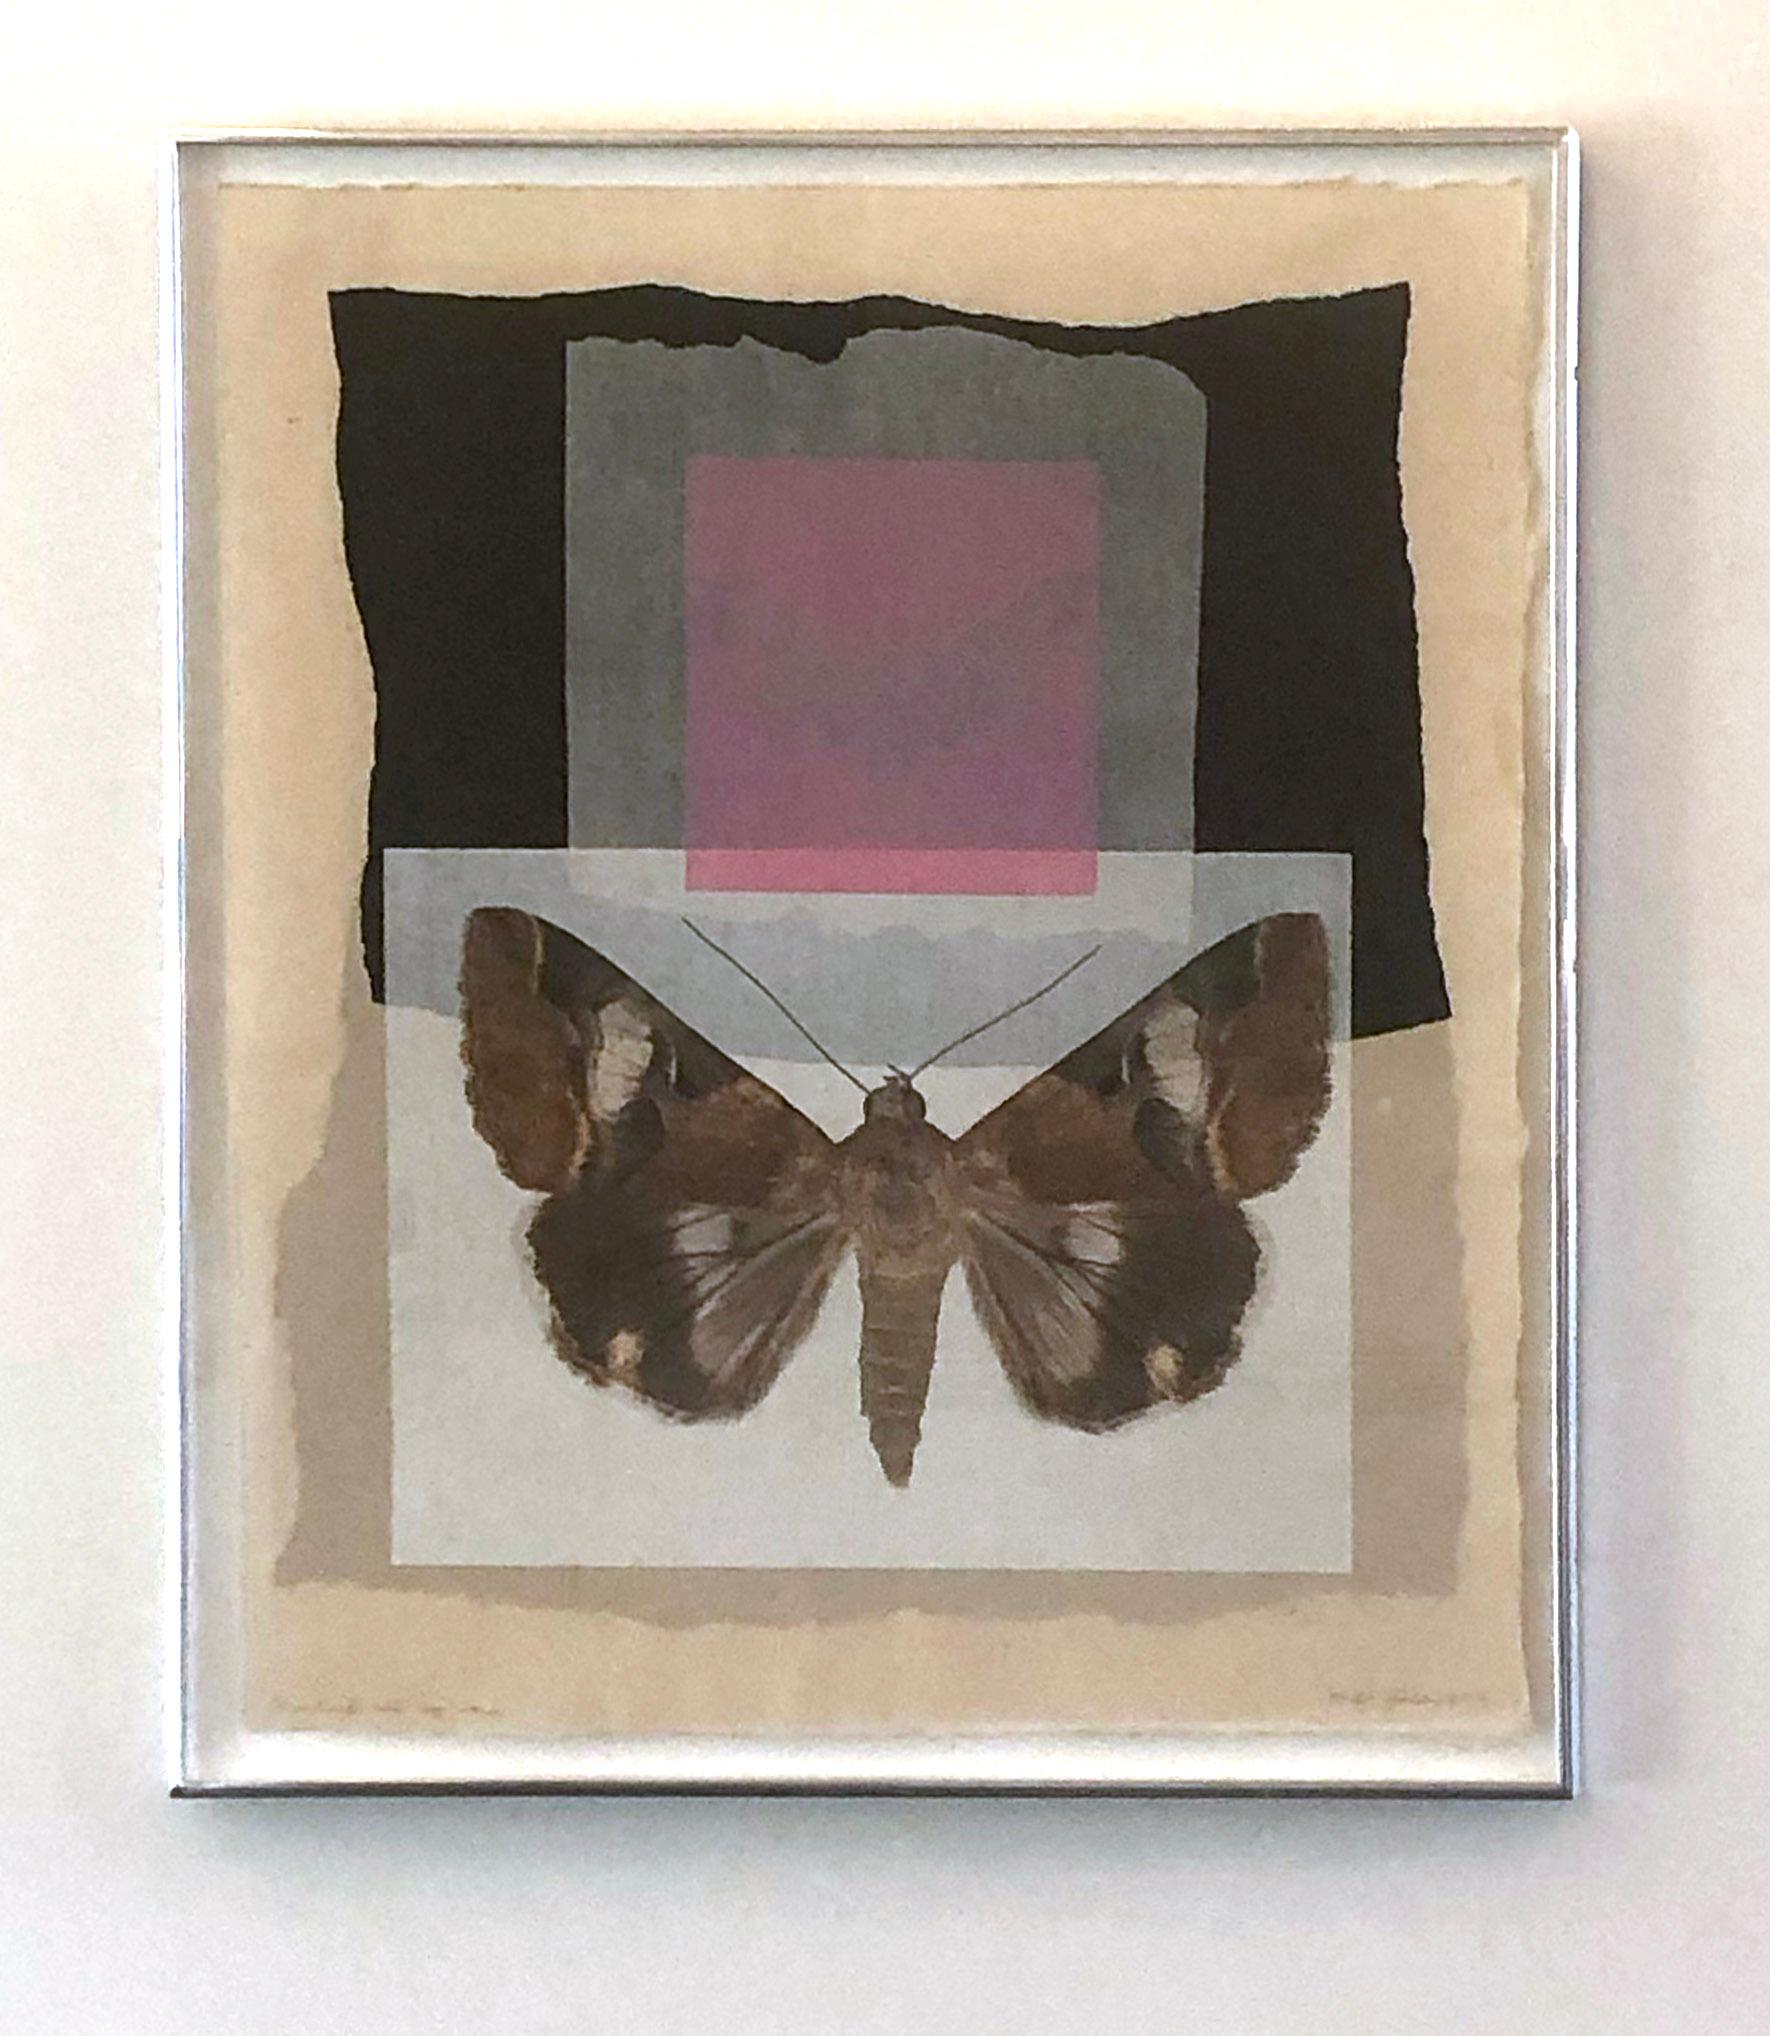 Monotype contemporain encadré d'un collage de motifs papillons et de motifs naturels roses et bleus - Gris Figurative Print par Joseph Scheer